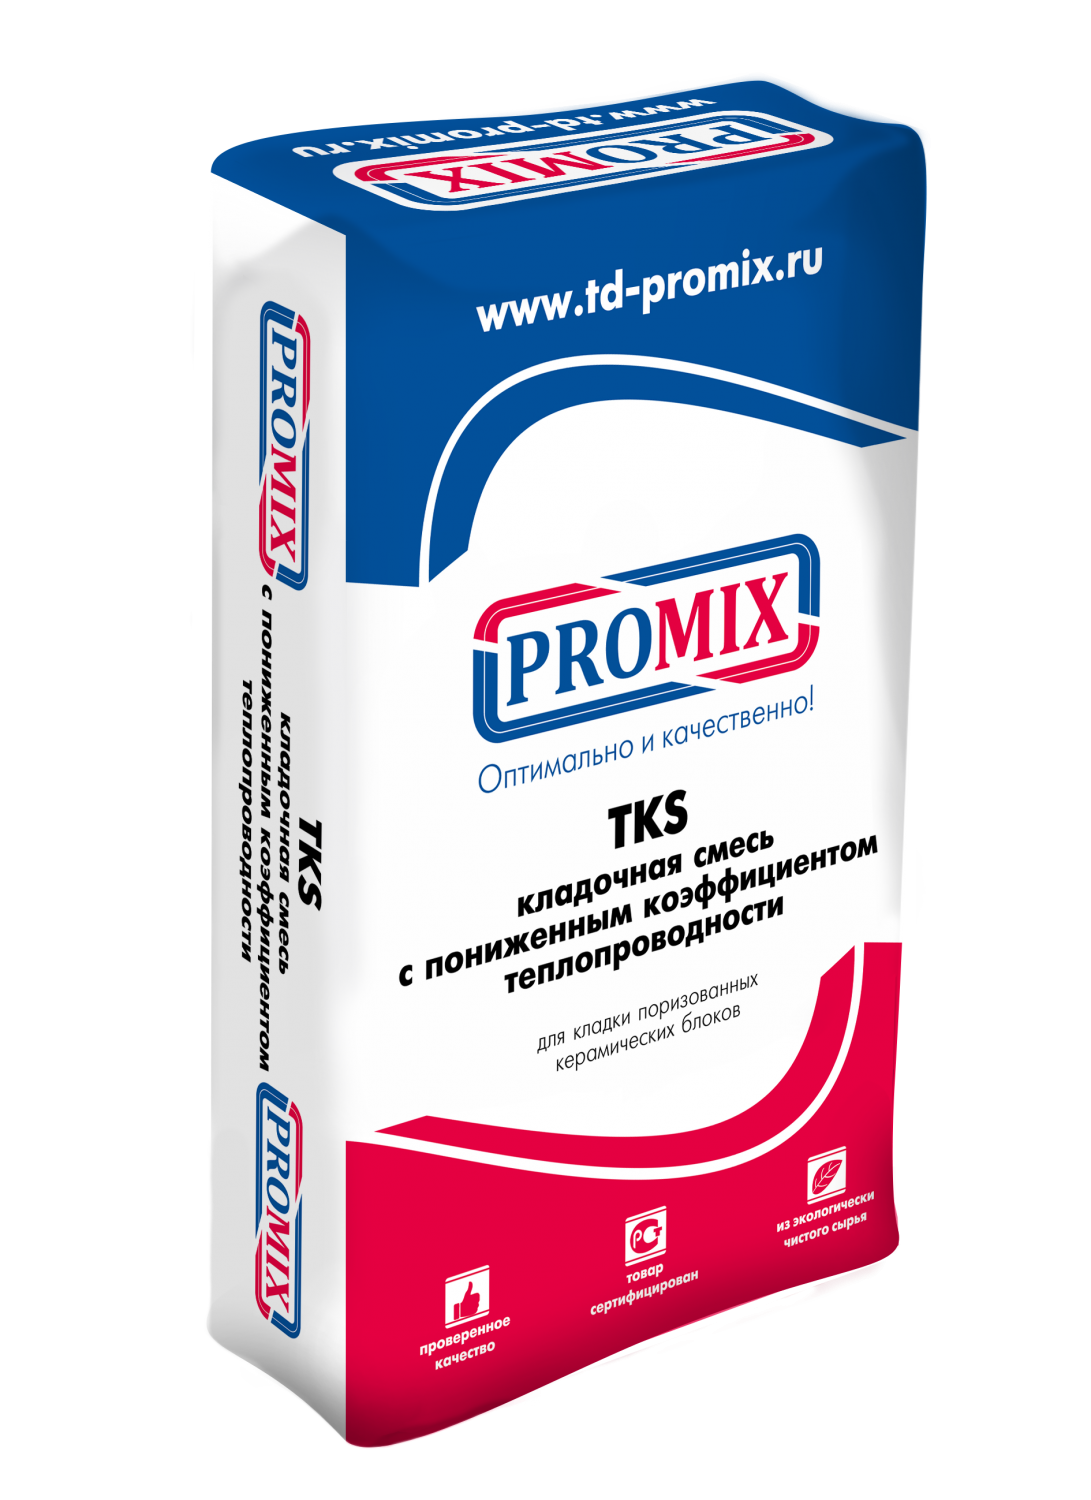 Теплоизоляционный кладочный раствор Promix ТКS 201/251, 25кг - Промикс